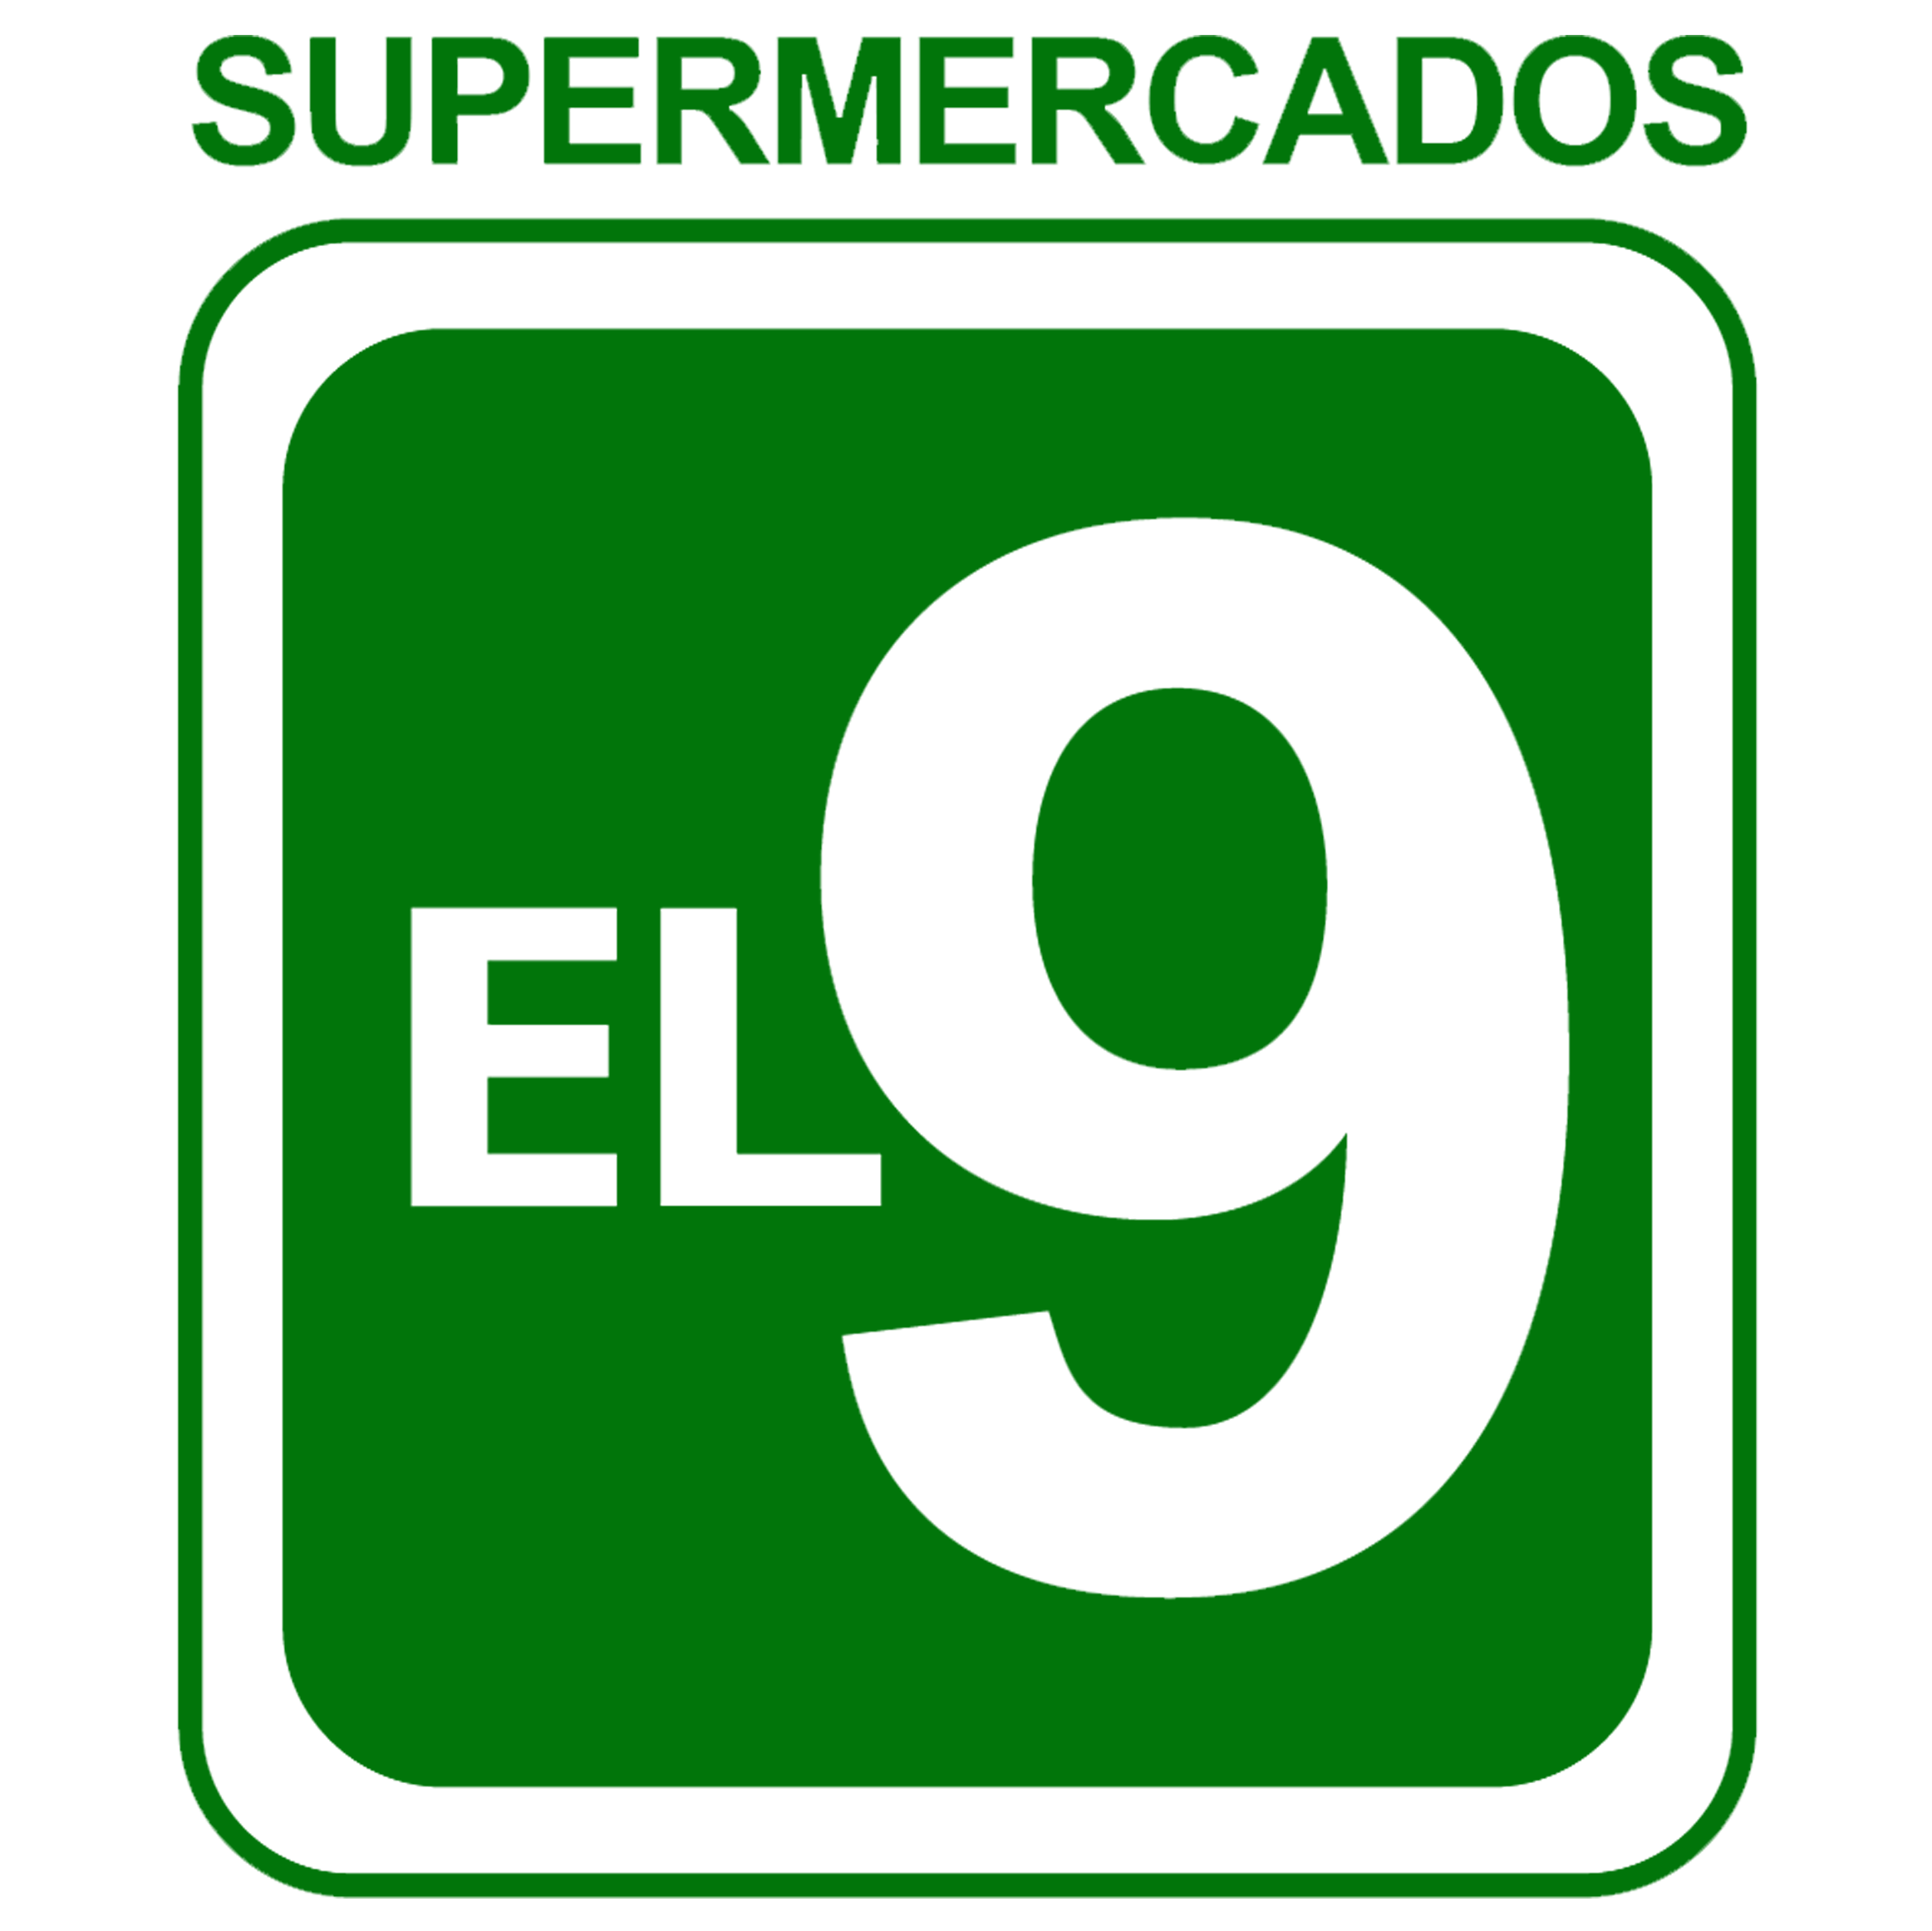 SUPERMERCADOS EL 9